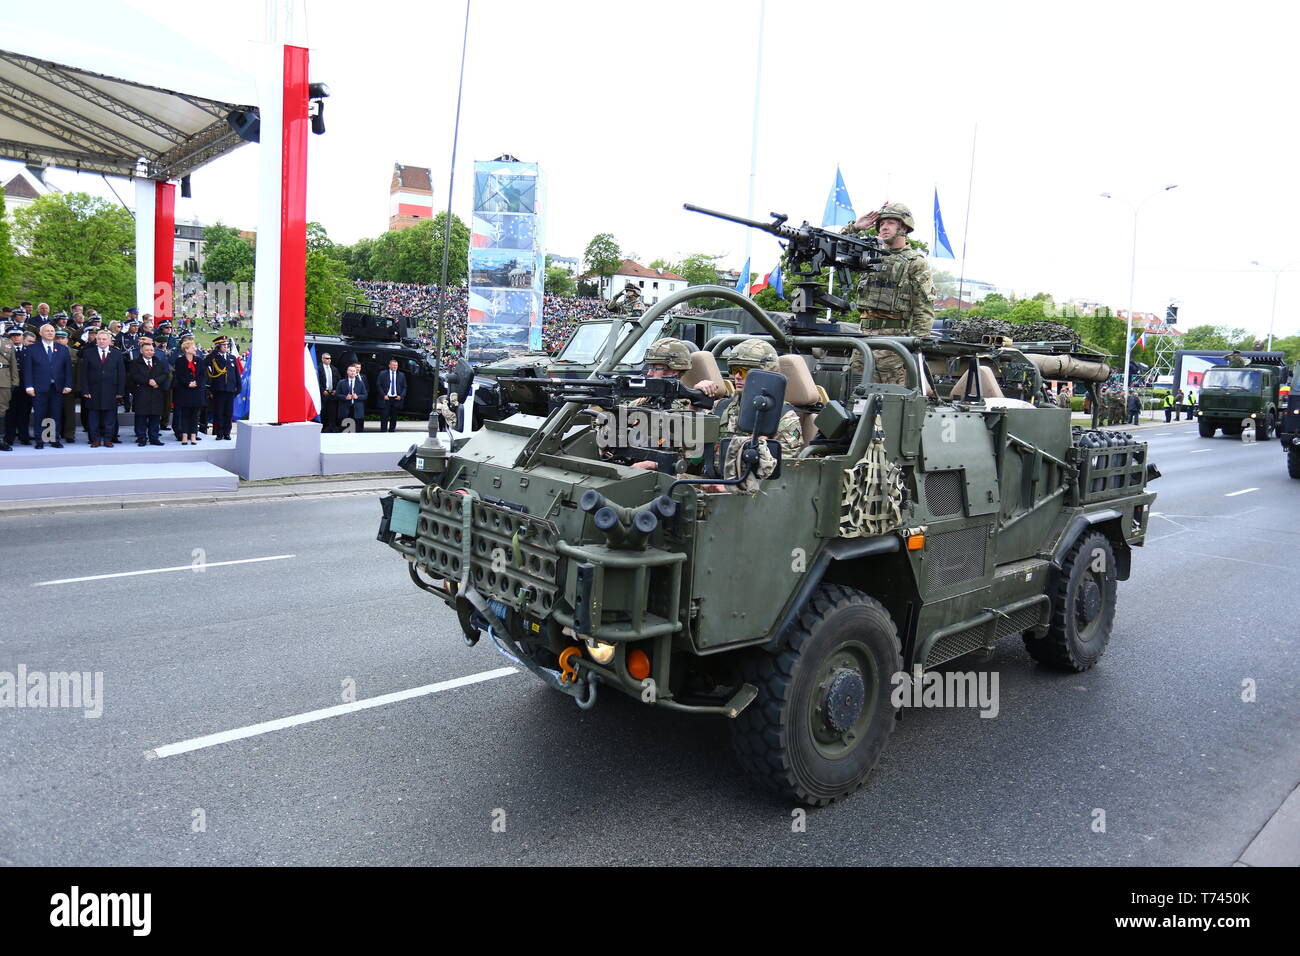 Polen: US Army präsentiert Fahrzeuge während der Militärparade zur Feier Tag der Polnischen Constituion. Stockfoto